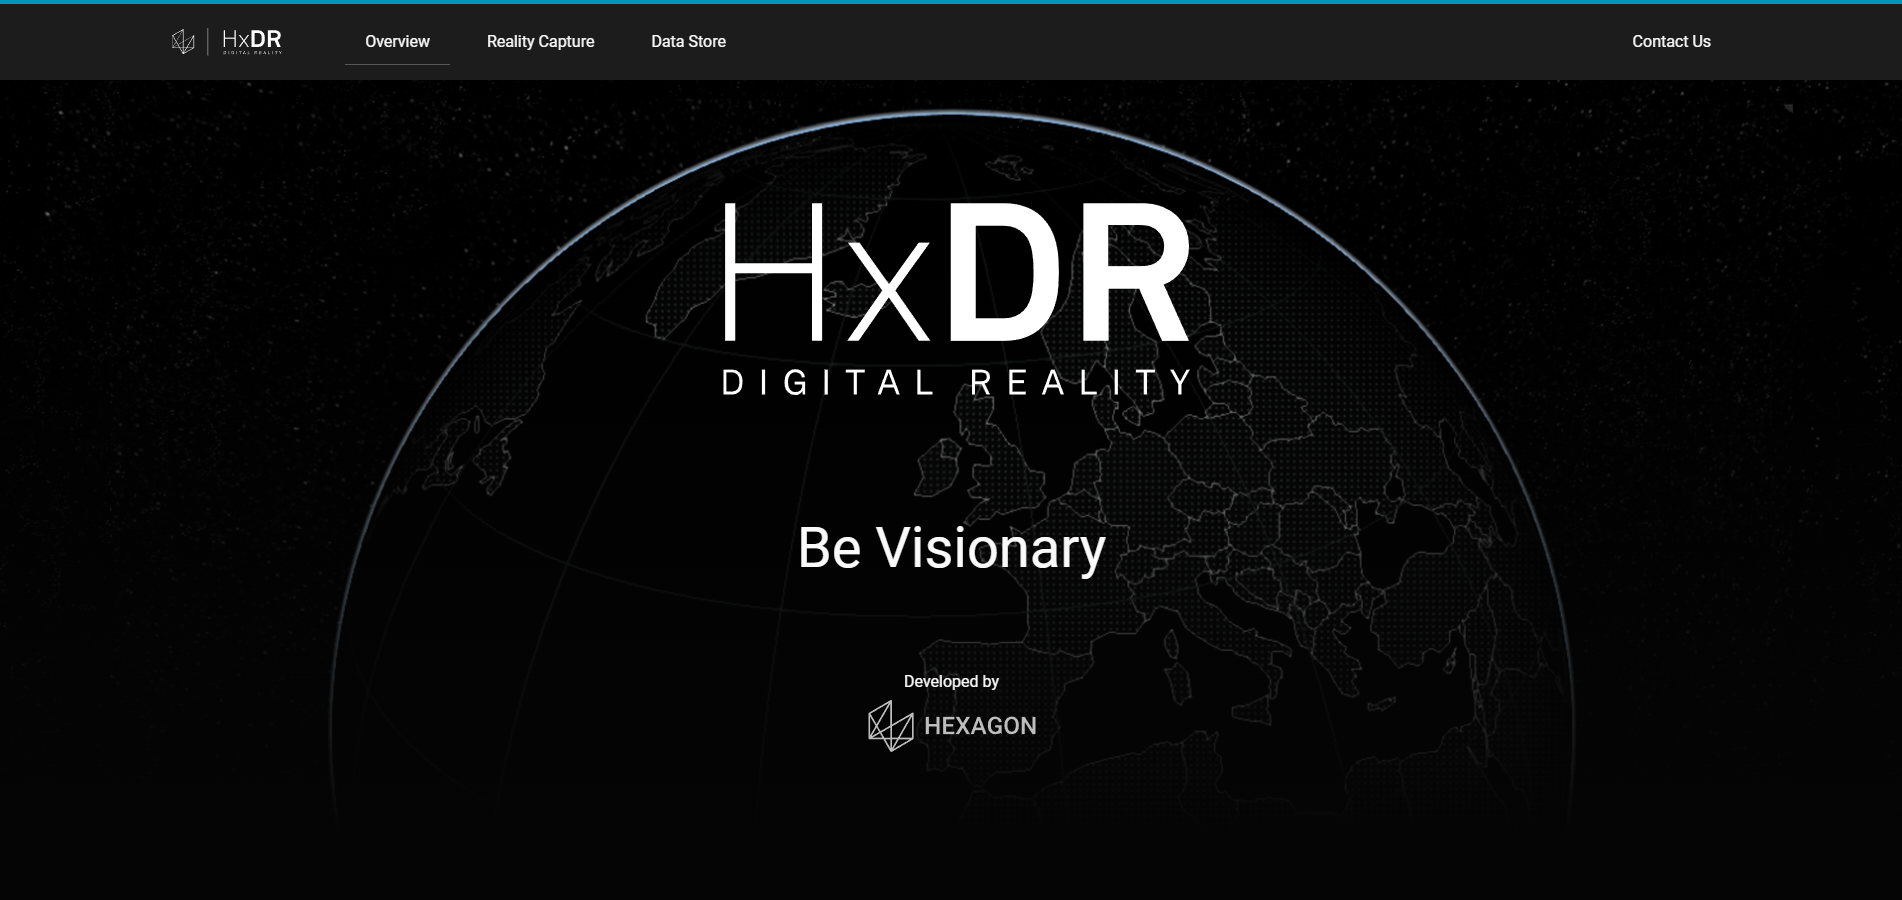 HxDR Marketing Site